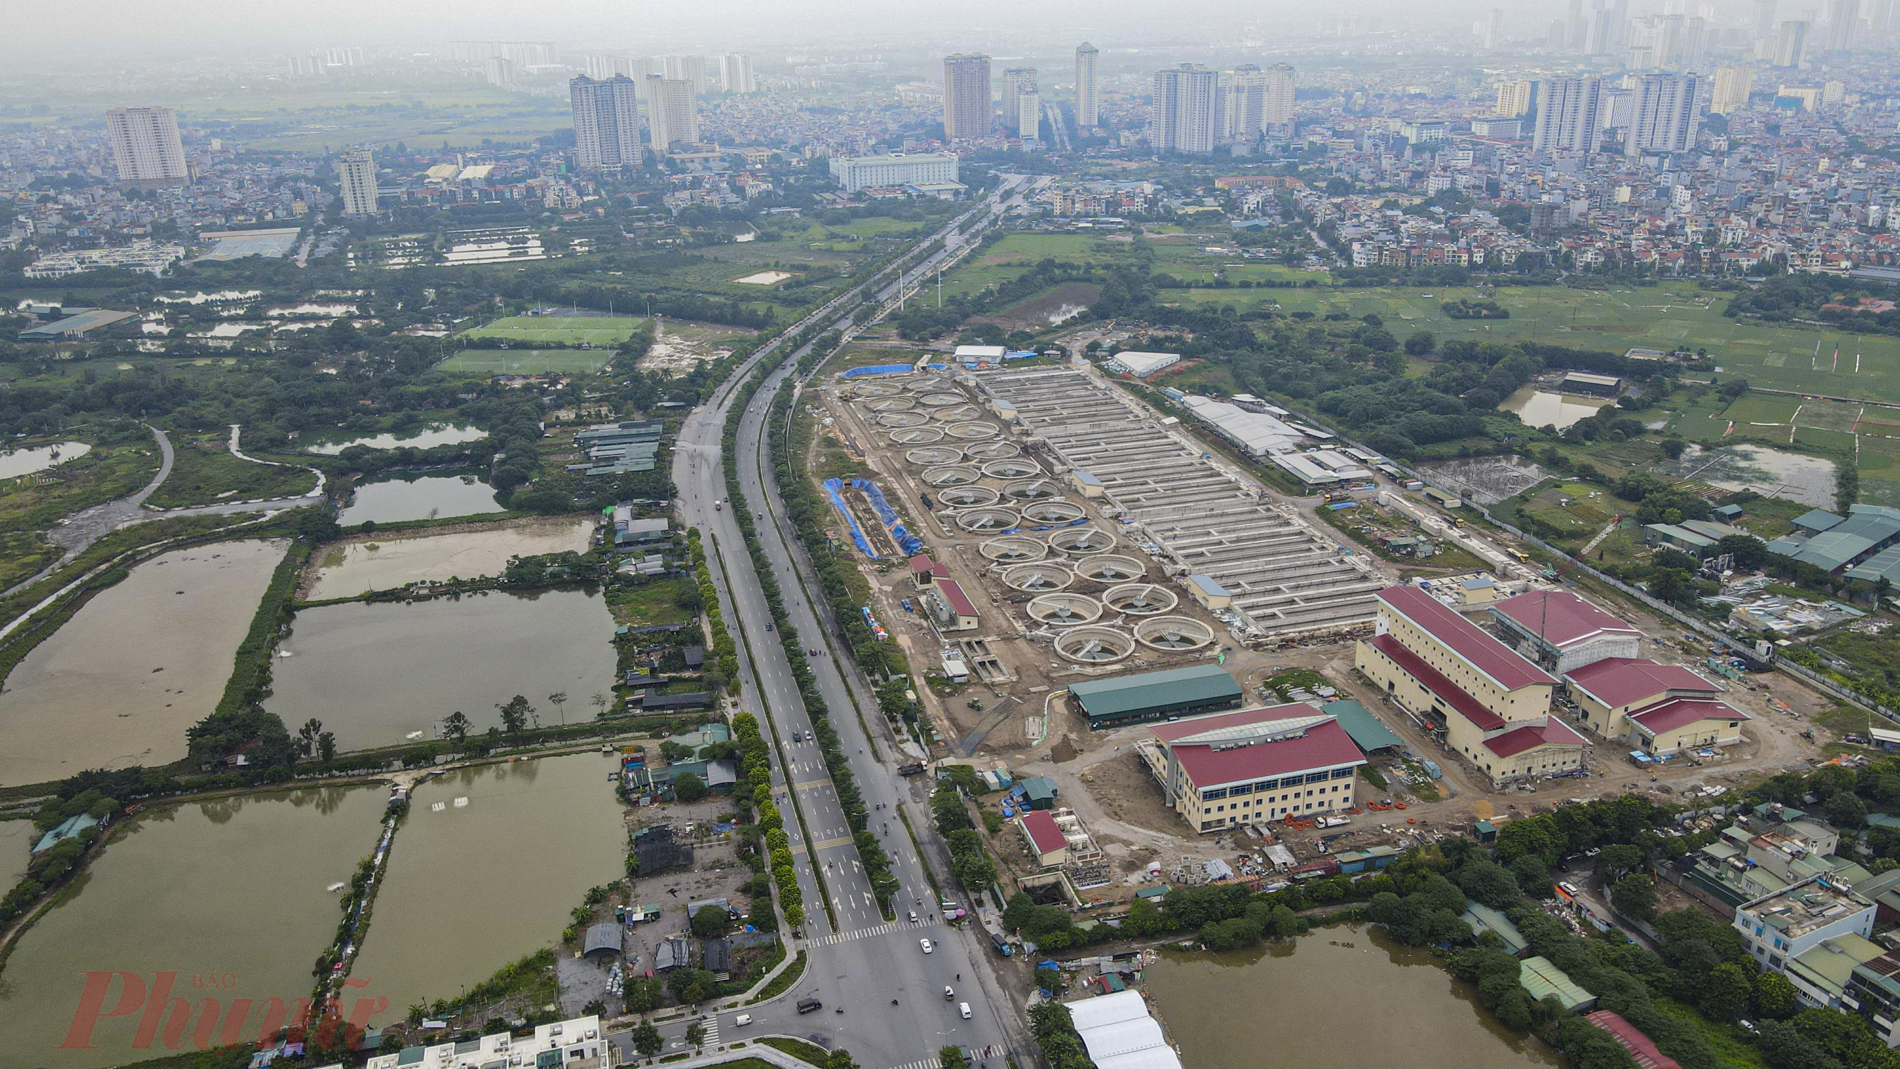 Dự án nhà máy xử lý nước thải Yên Xá (huyện Thanh Trì, Hà Nội) được khởi công xây dựng từ đầu tháng 10/2016  do Ban Quản lý dự án đầu tư xây dựng công trình Hạ tầng kỹ thuật và Nông nghiệp làm chủ đầu tư., dự kiến được bàn giao vào năm 2022 với tổng mức đầu tư hơn 800 triệu USD (hơn 16.000 tỷ đồng).